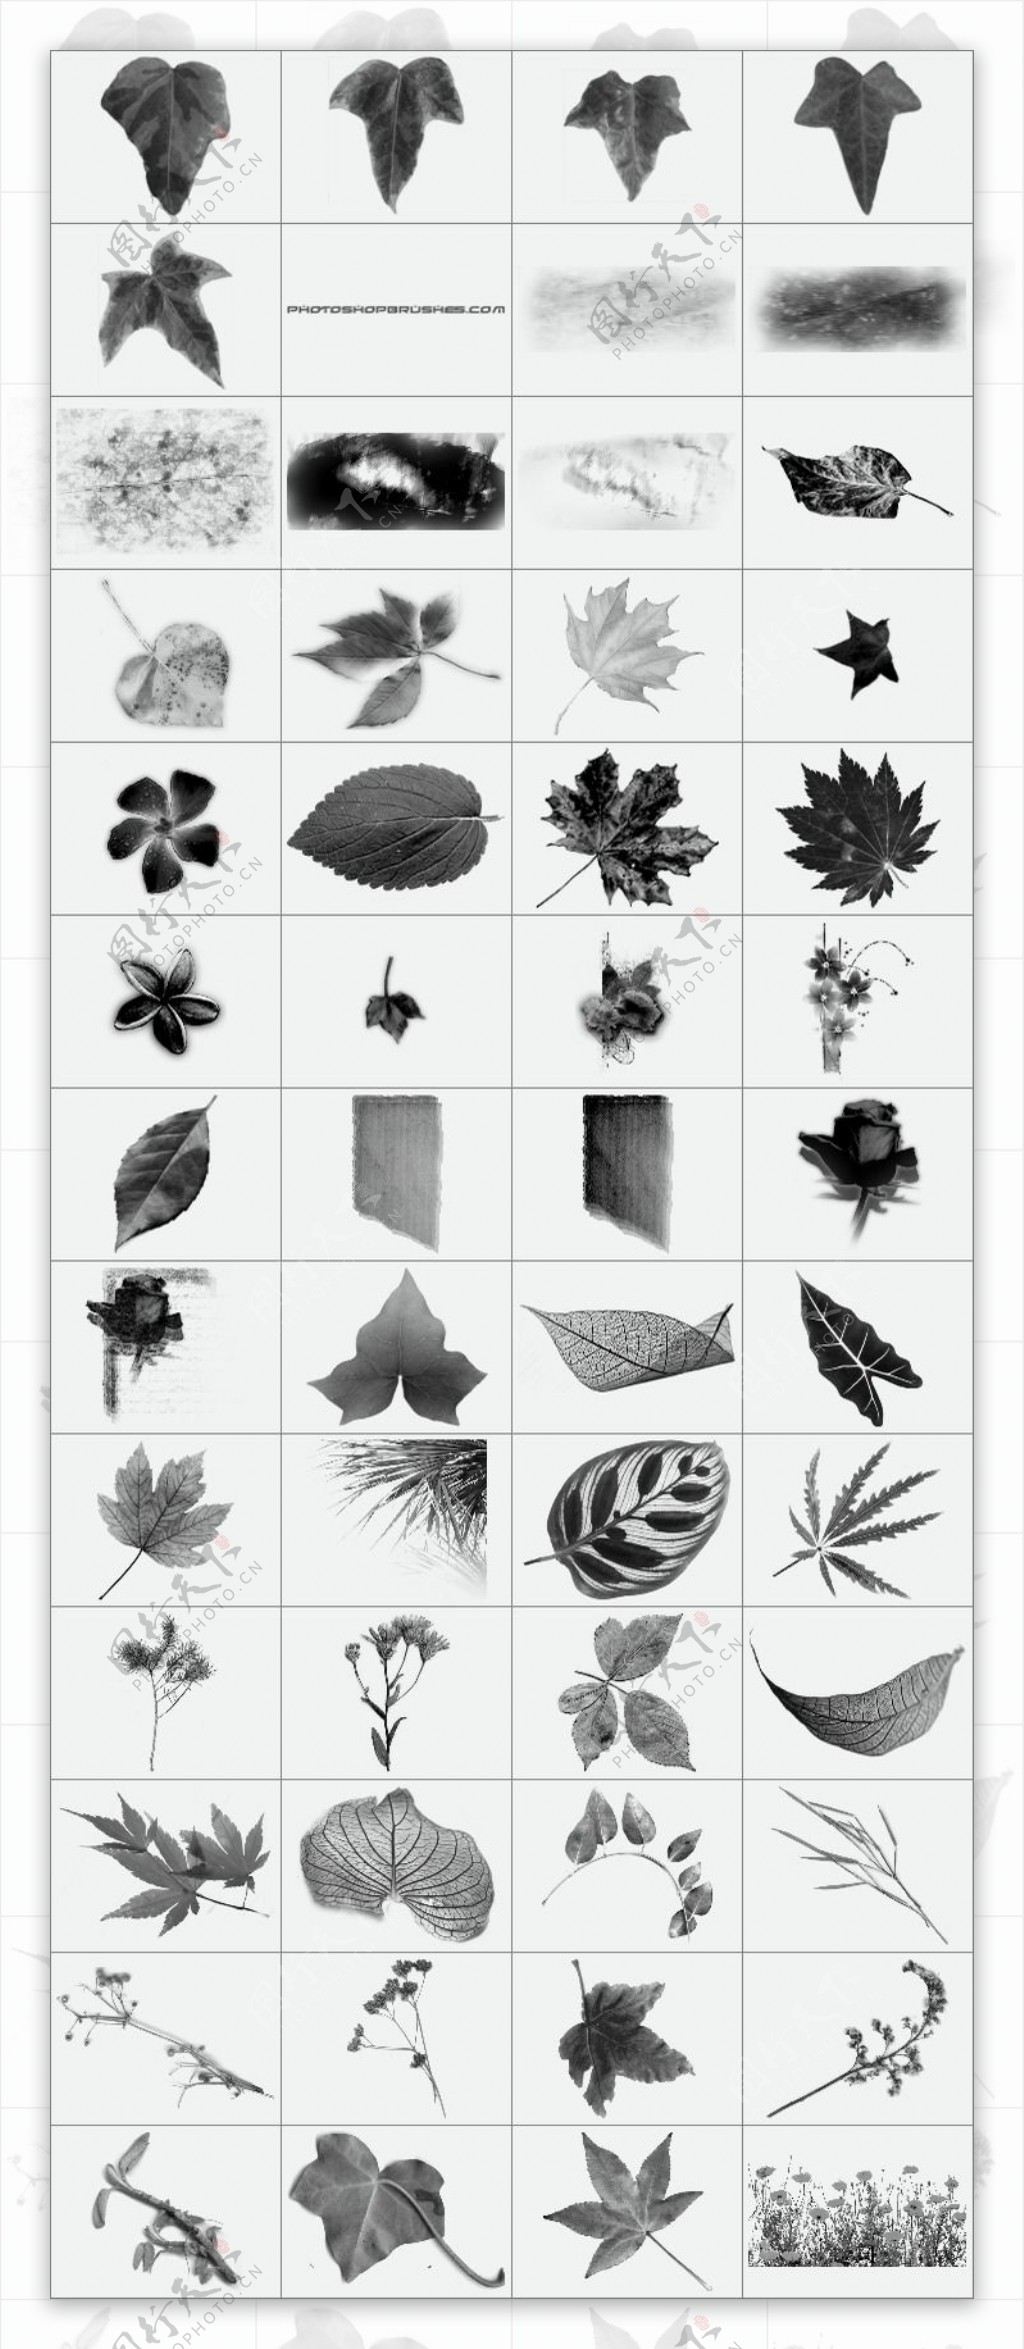 多种类型的植物树叶笔刷6个打包下载